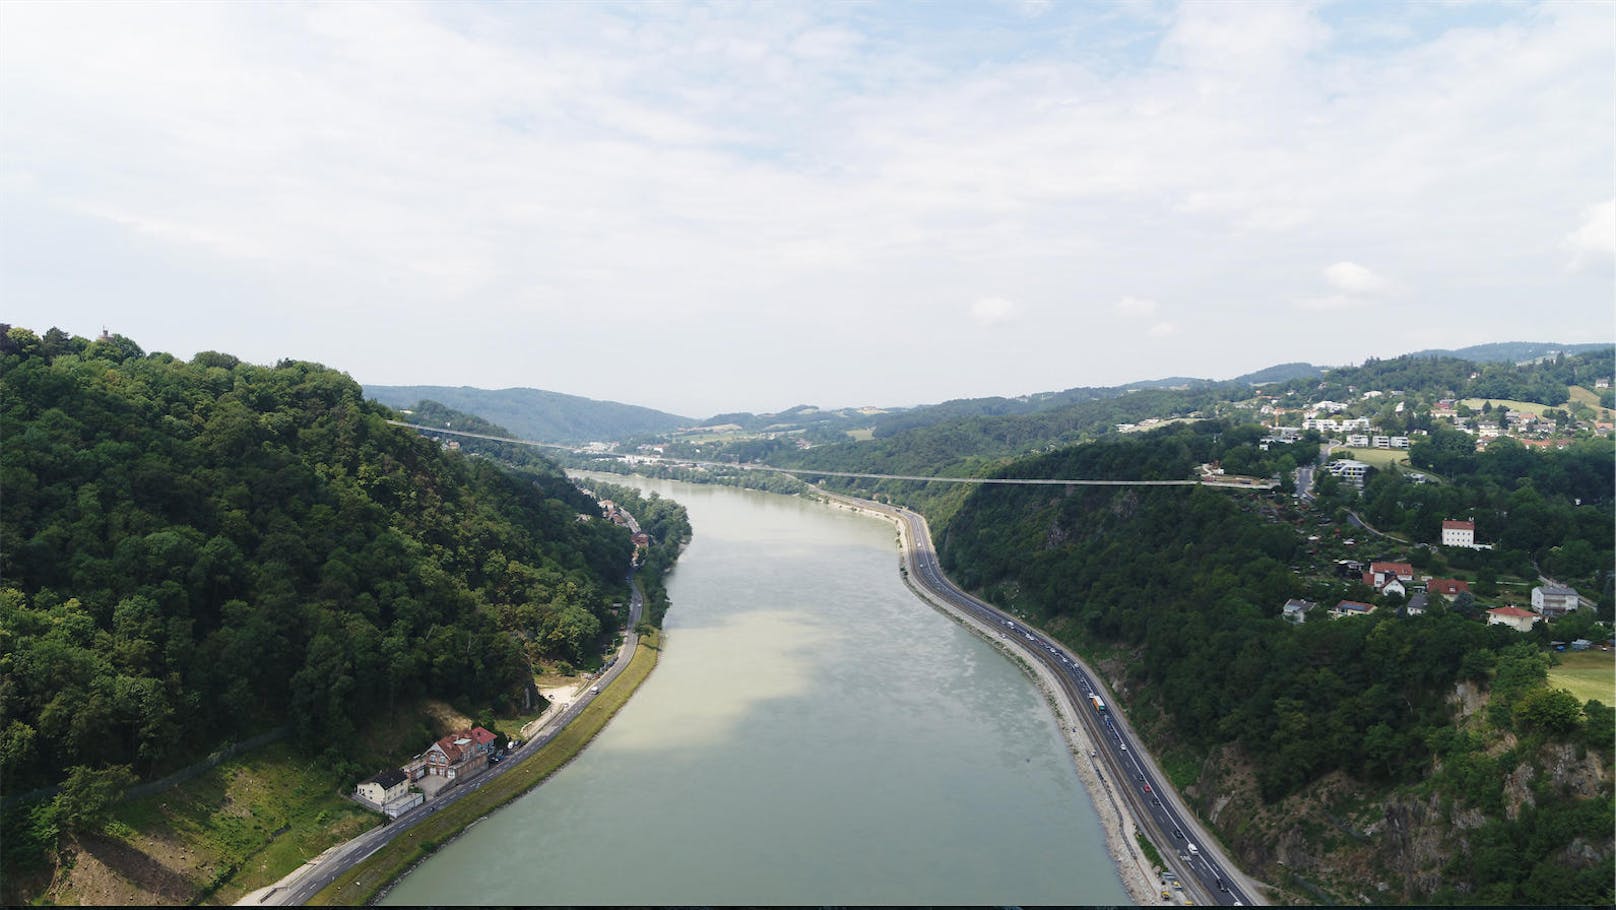 500 Meter lang und 110 Meter hoch. Die neue Hängebrücke in Linz hat es in sich.